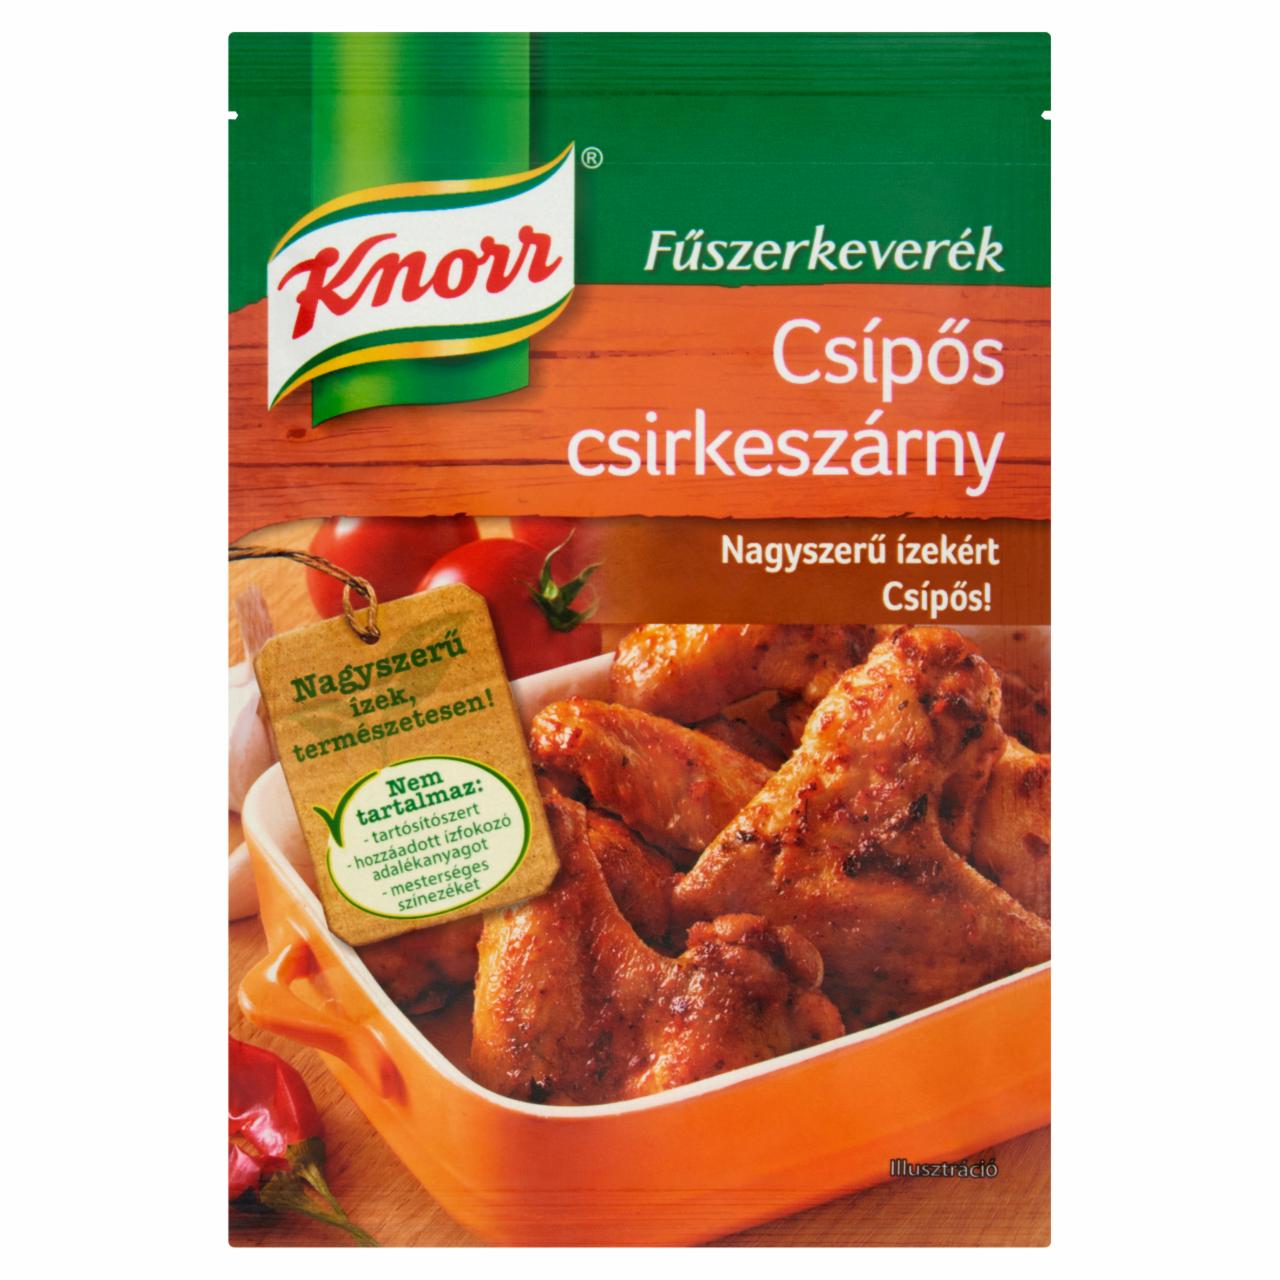 Képek - Knorr csípős csirkeszárny fűszerkeverék 35 g